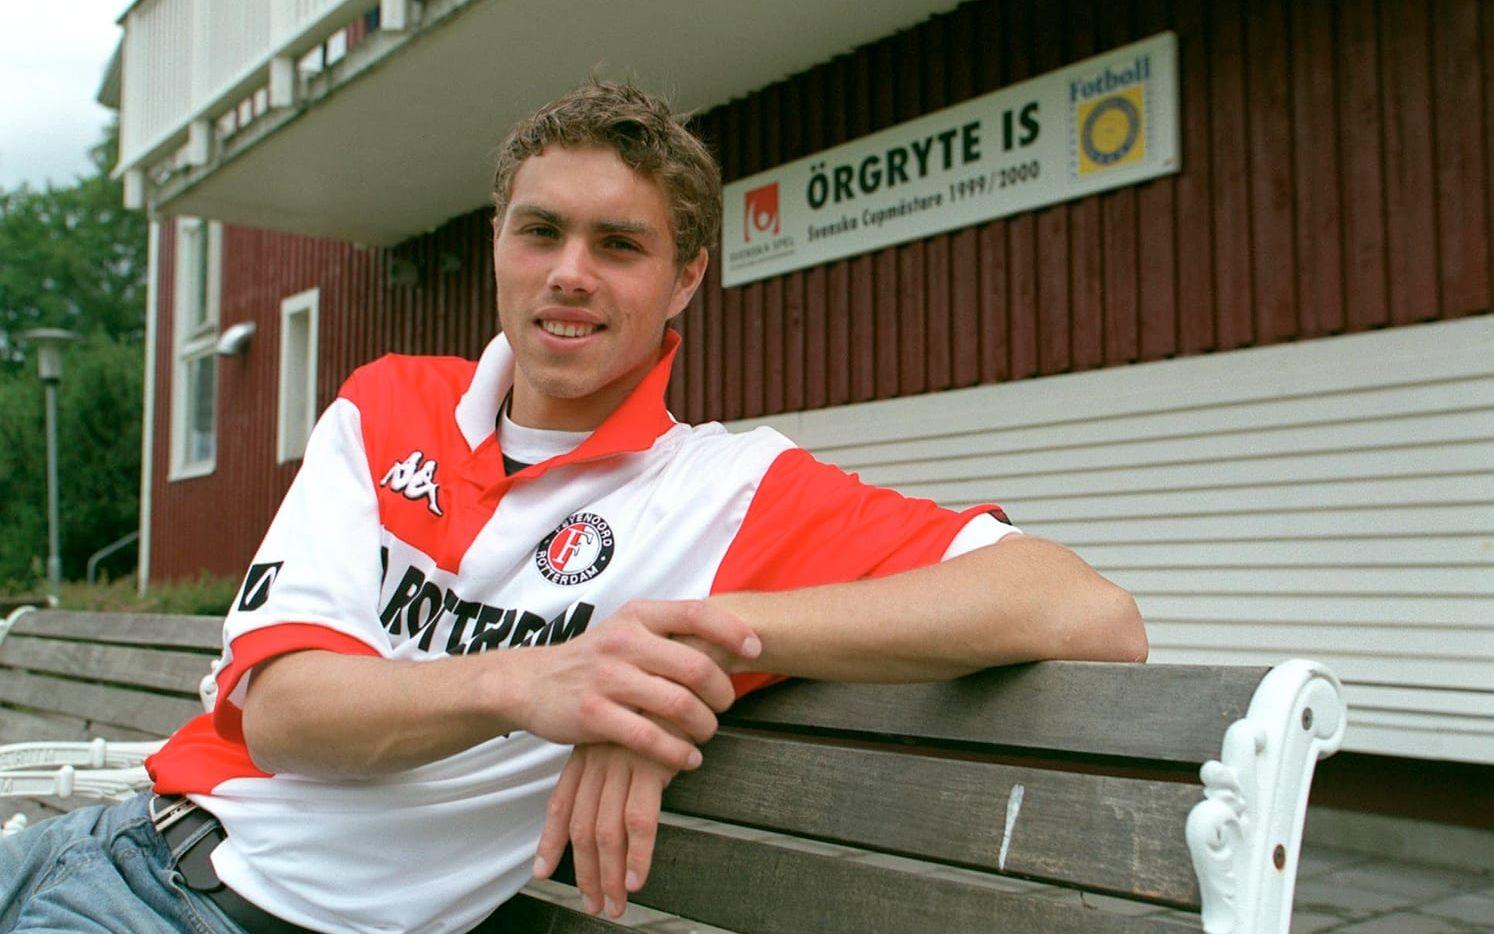 Elmander lämnade sedan Örgryte och Sverige för att bli ungdomsproffs i Nederländerna och Feyenoord. Där han vann Uefa-cuptiteln 2002.